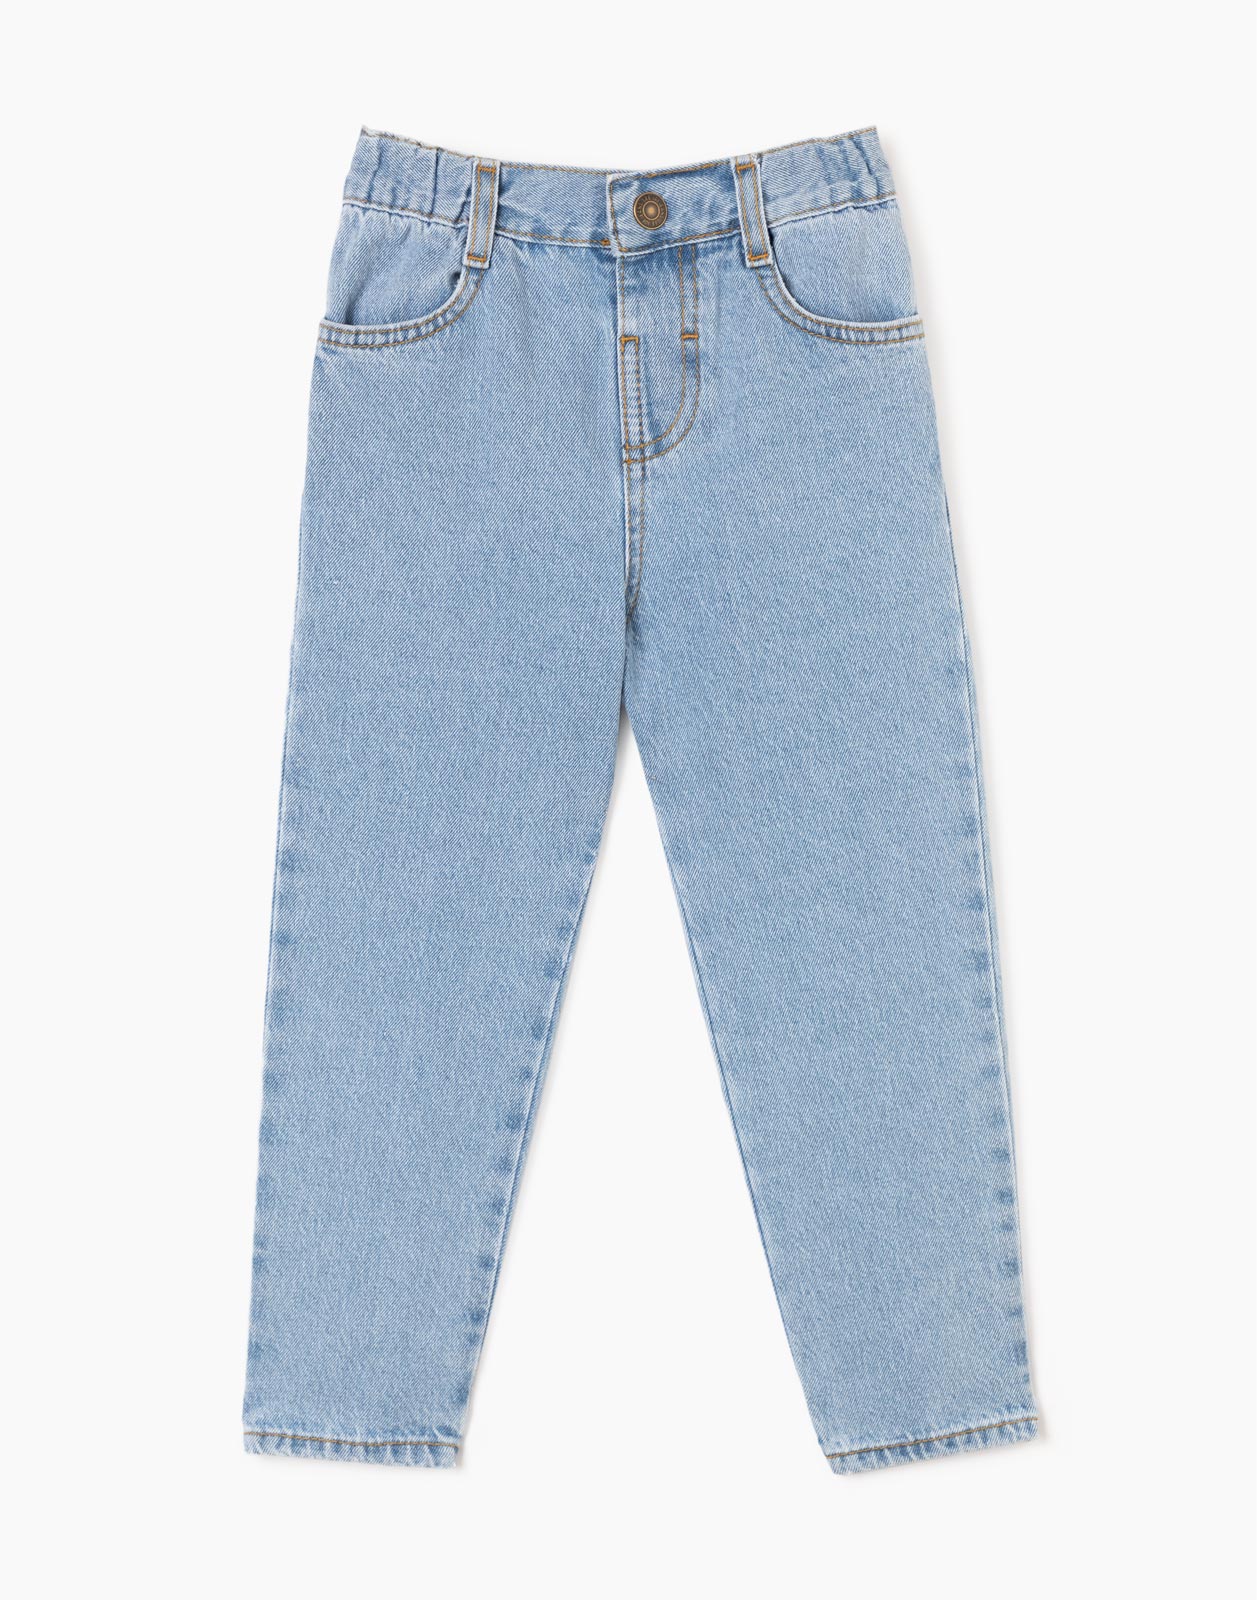 Прямые джинсы Straight на резинке для мальчика р.122